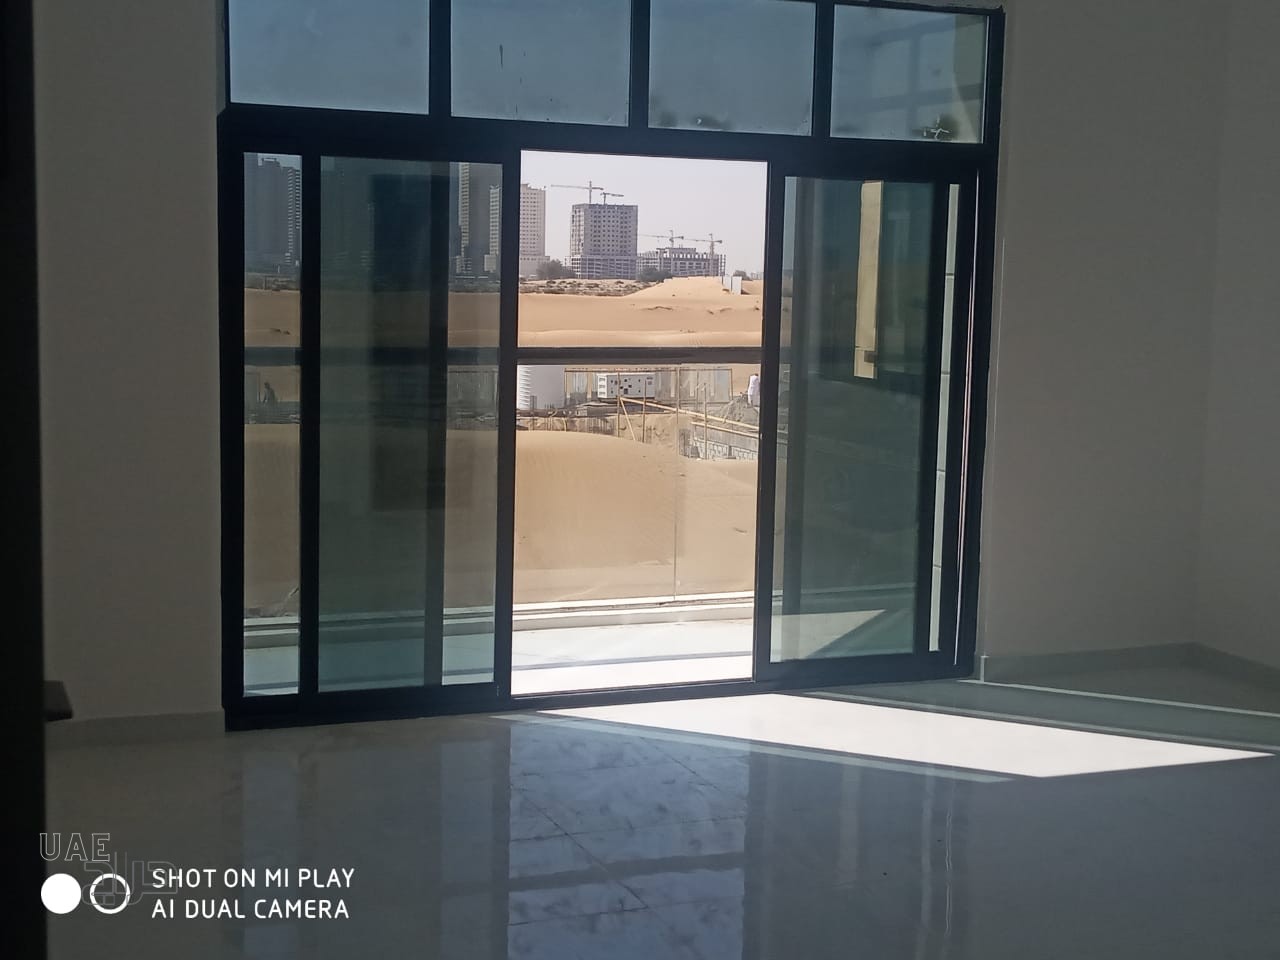 فيلا سكنية للبيع في عجمان 5 غرف ماستر قرب دبي 20 دقيقة تملك حر